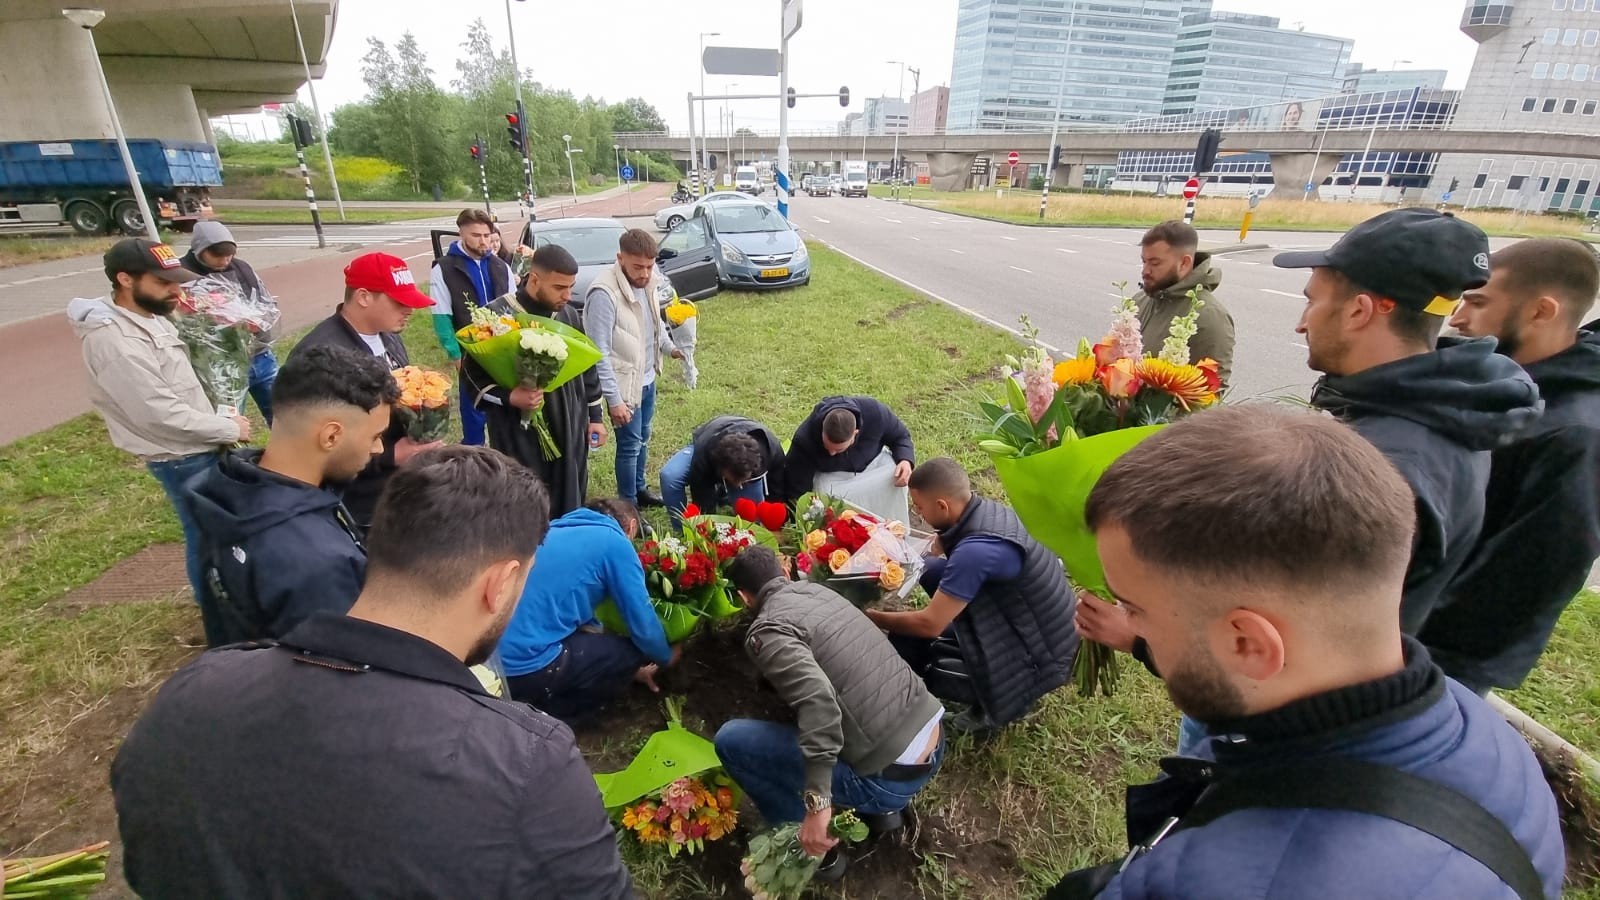 Bloemen voor bij aanrijding overleden Muhammed